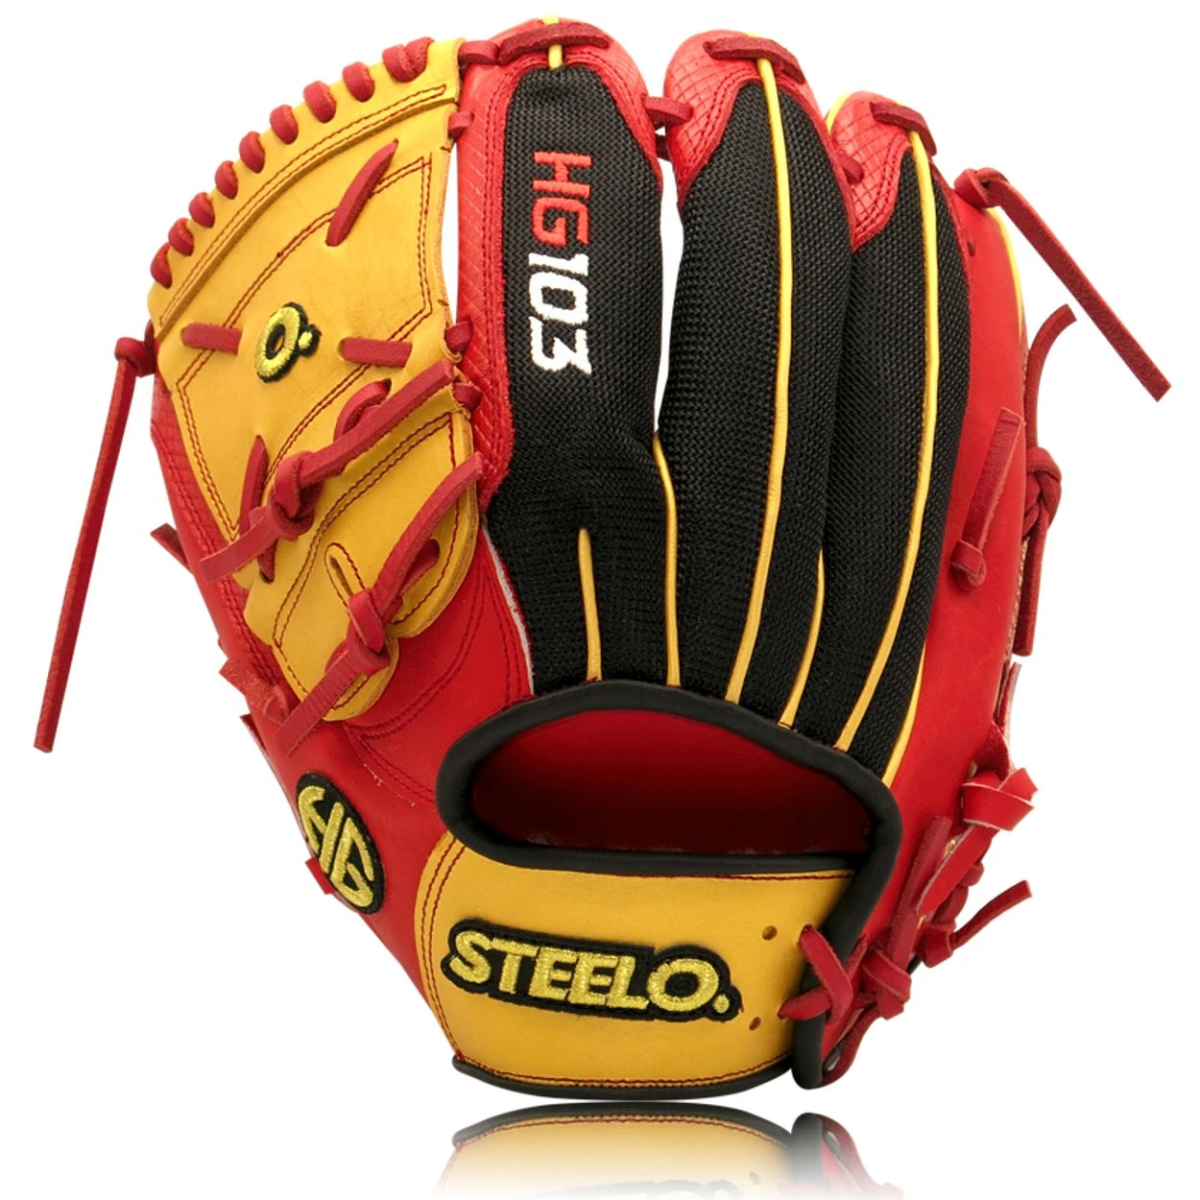 Hunter Greene glove from the Steelo line of baseball gloves.